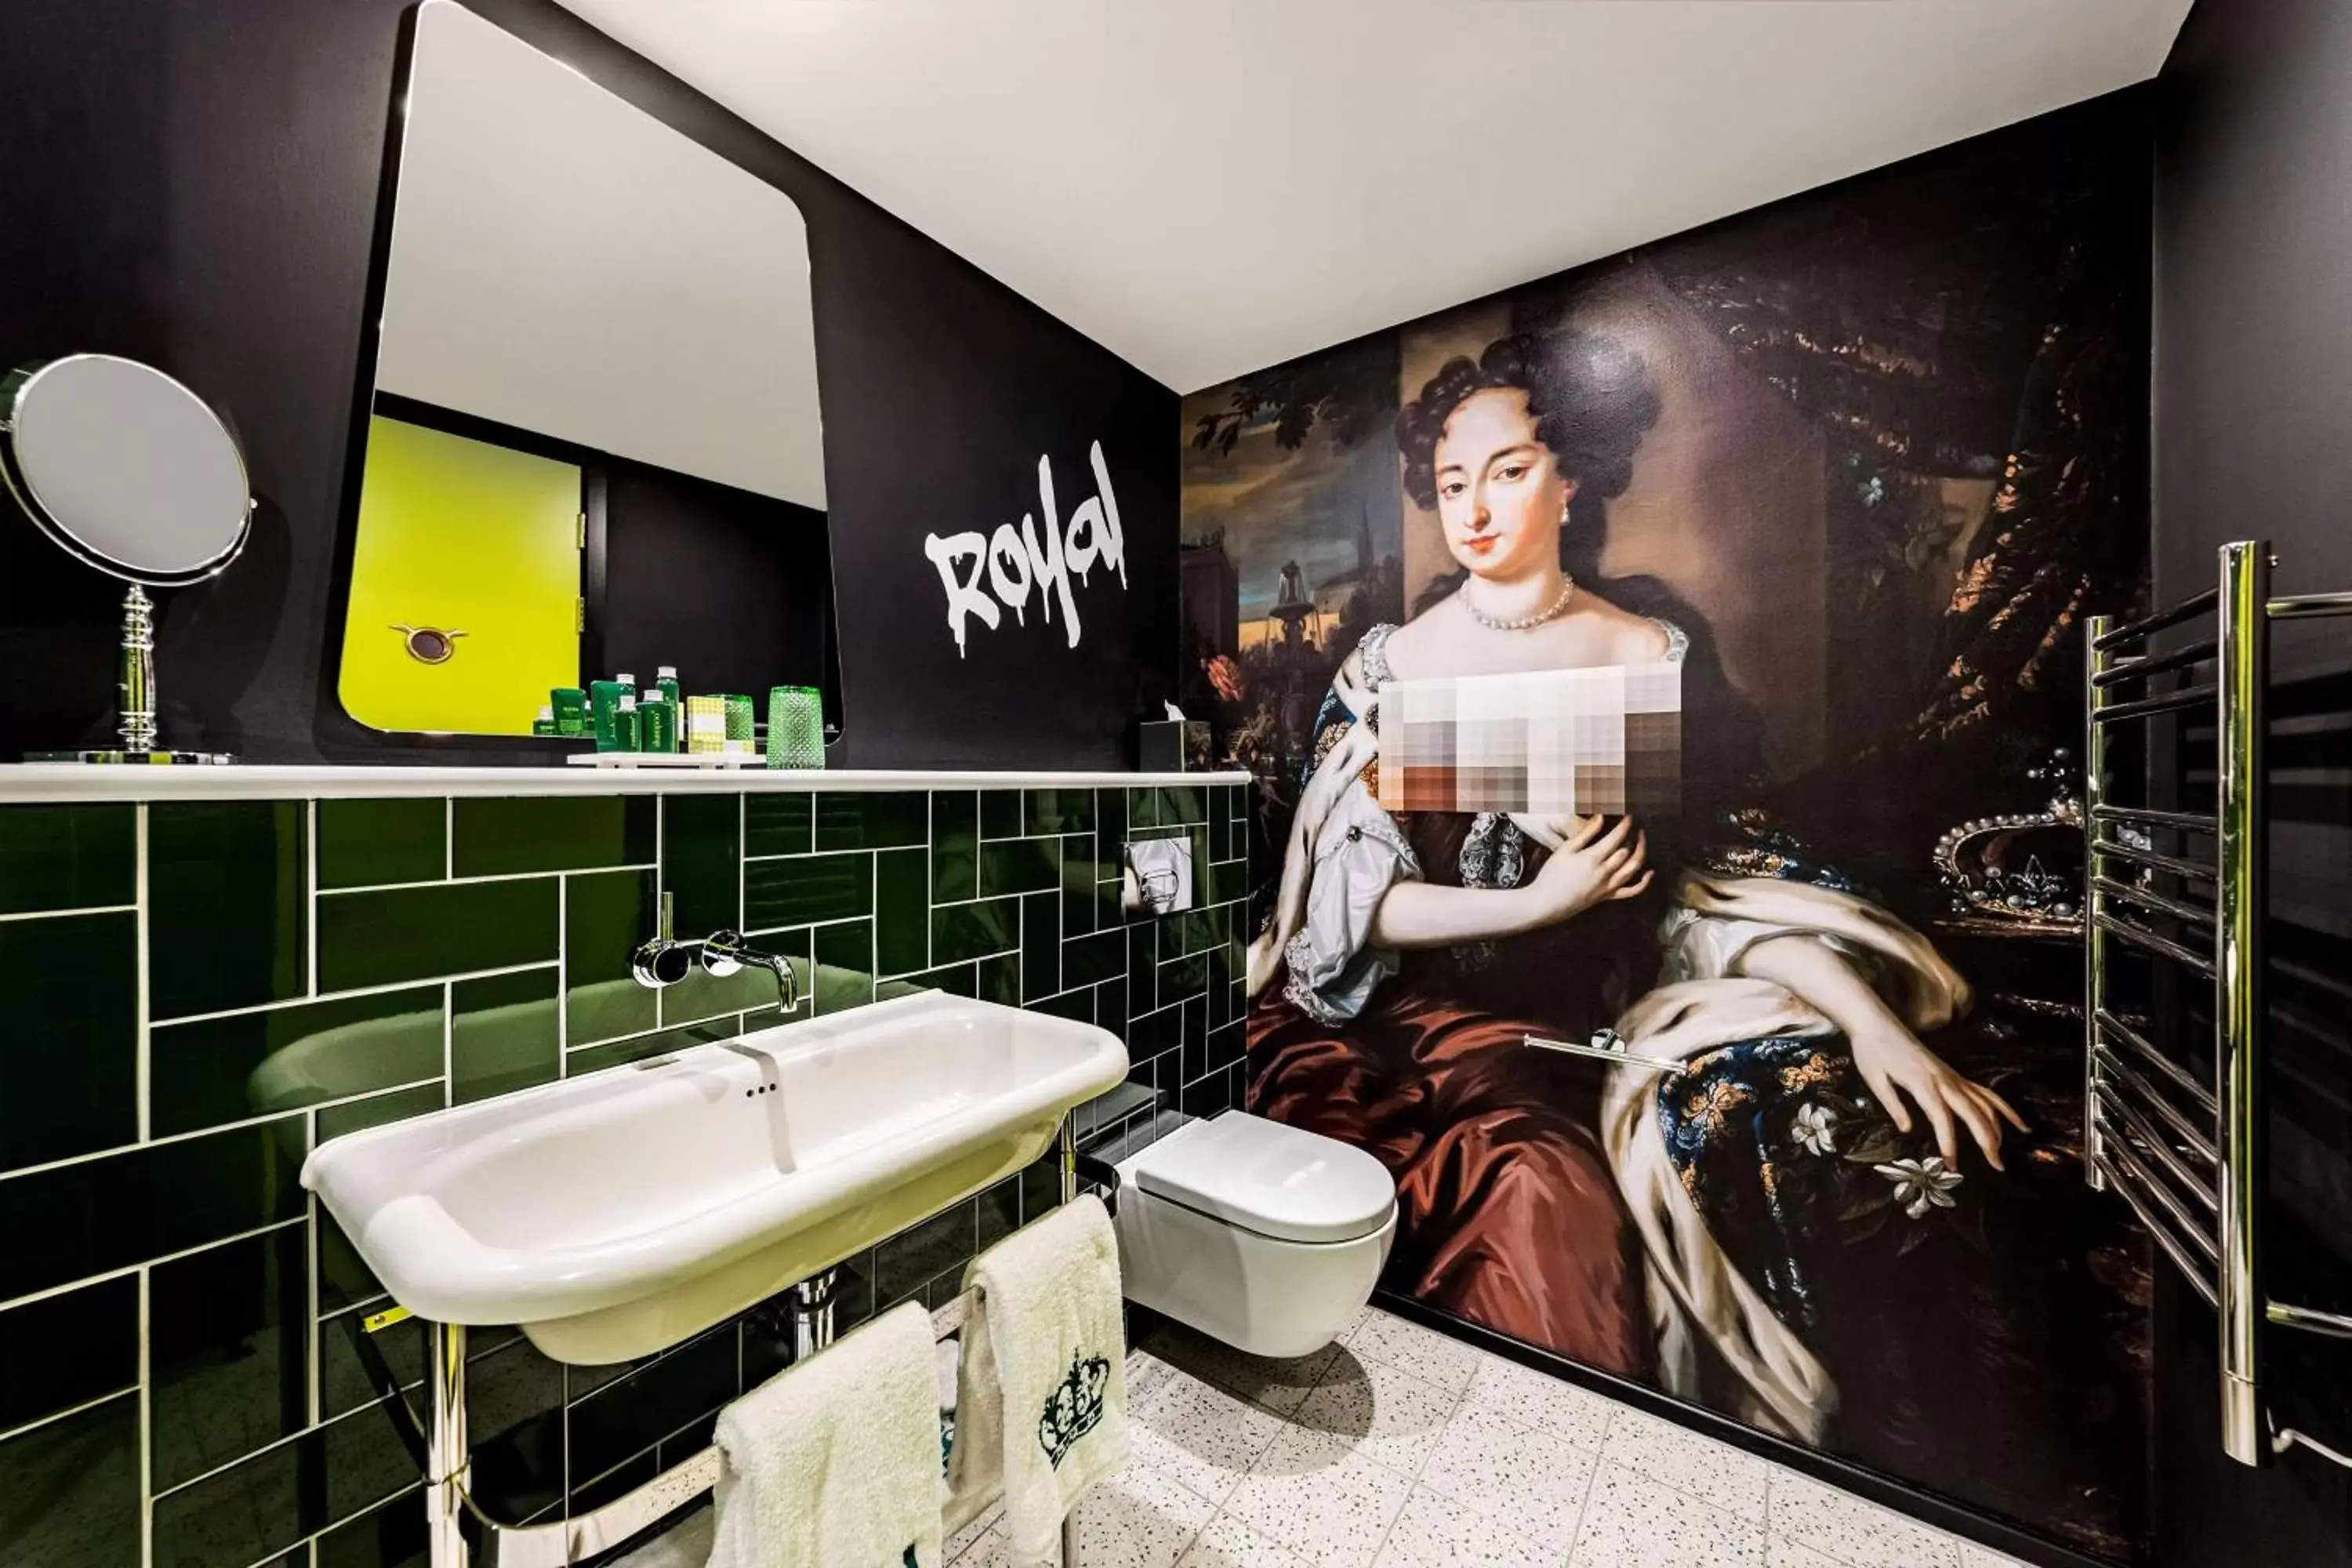 Toilet, Bathroom in nhow London